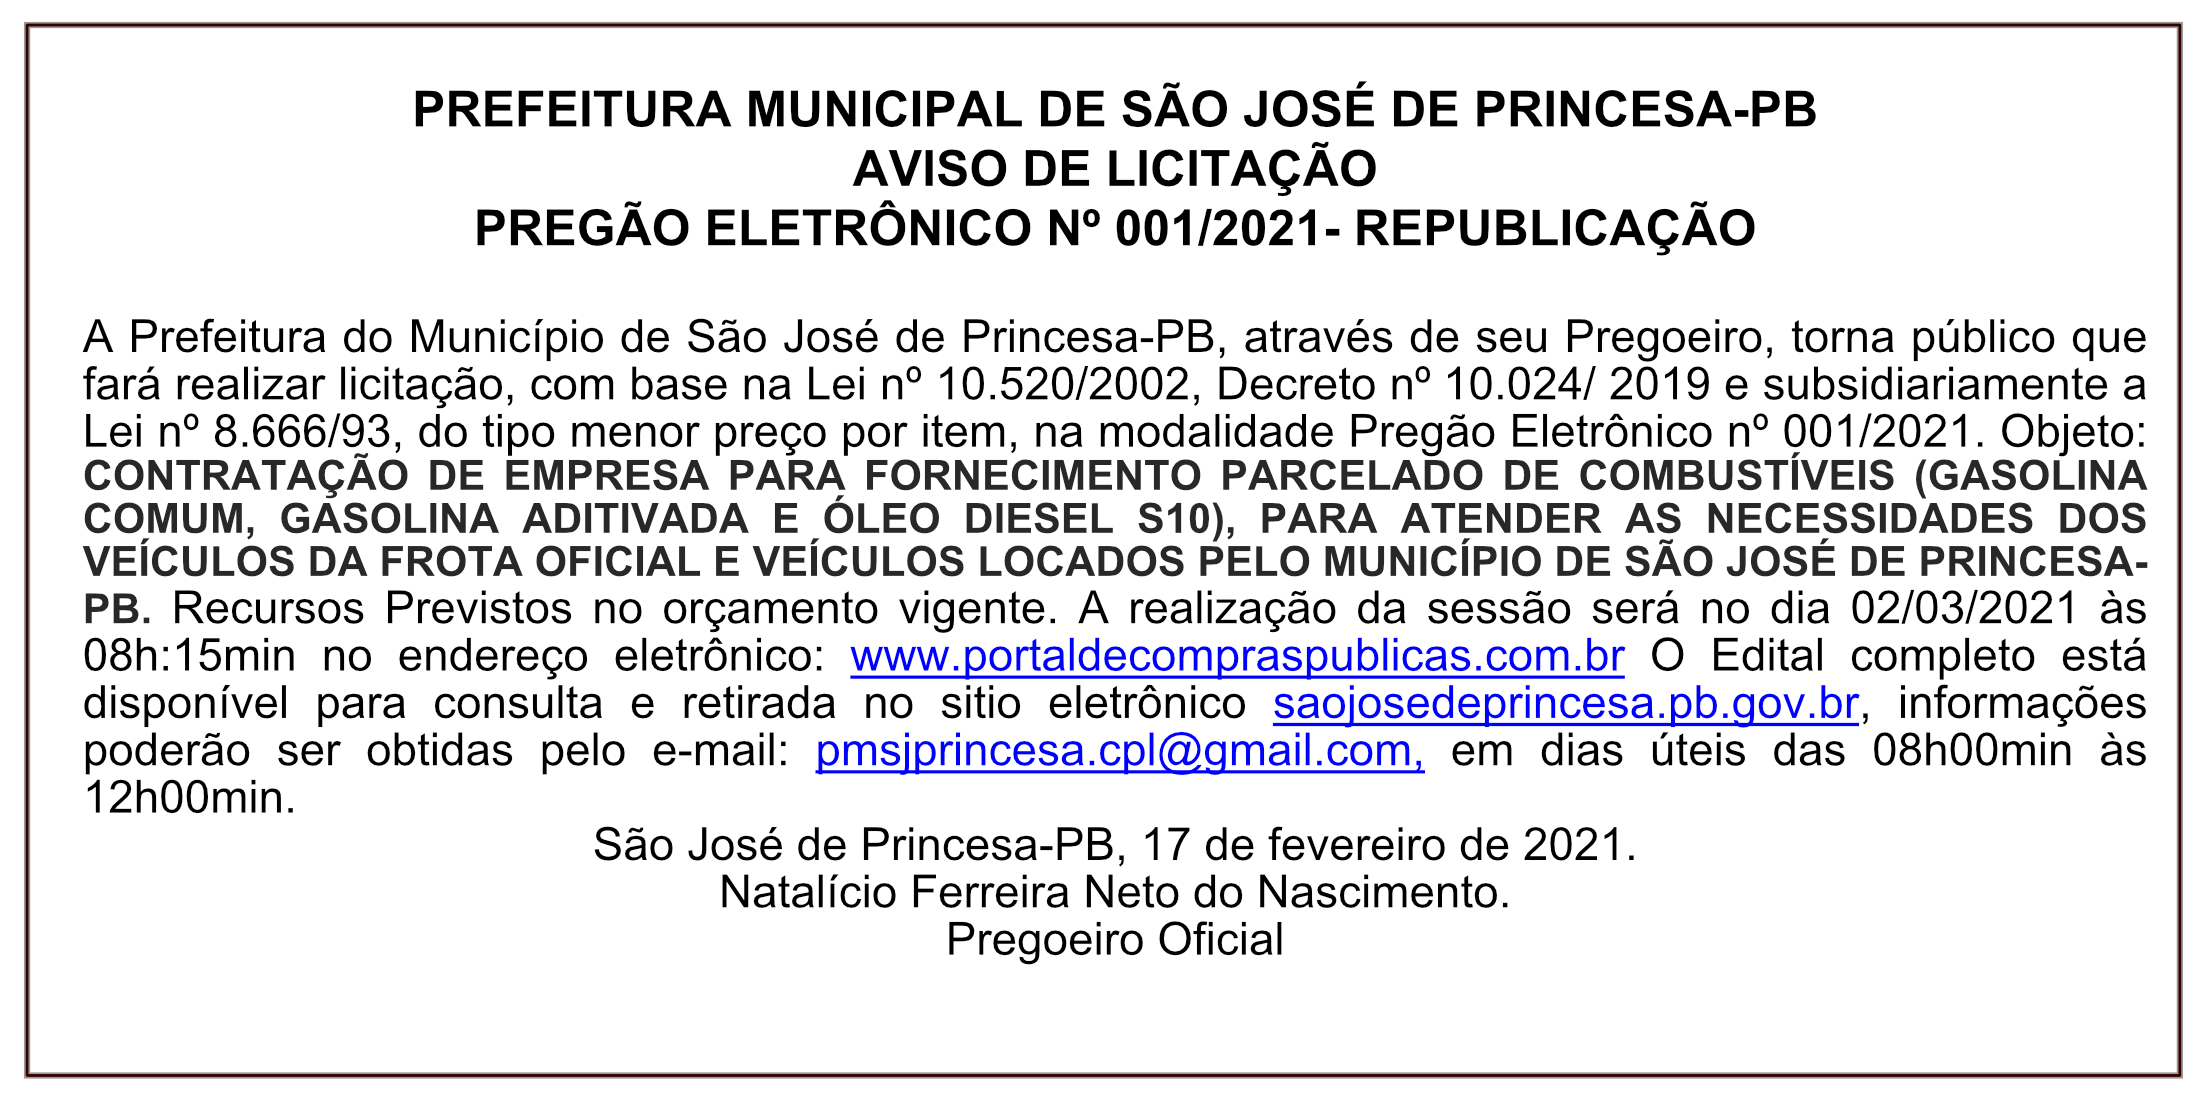 PREFEITURA MUNICIPAL DE SÃO JOSÉ DE PRINCESA-PB – AVISO DE LICITAÇÃO – PREGÃO ELETRÔNICO Nº 001/2021- REPUBLICAÇÃO